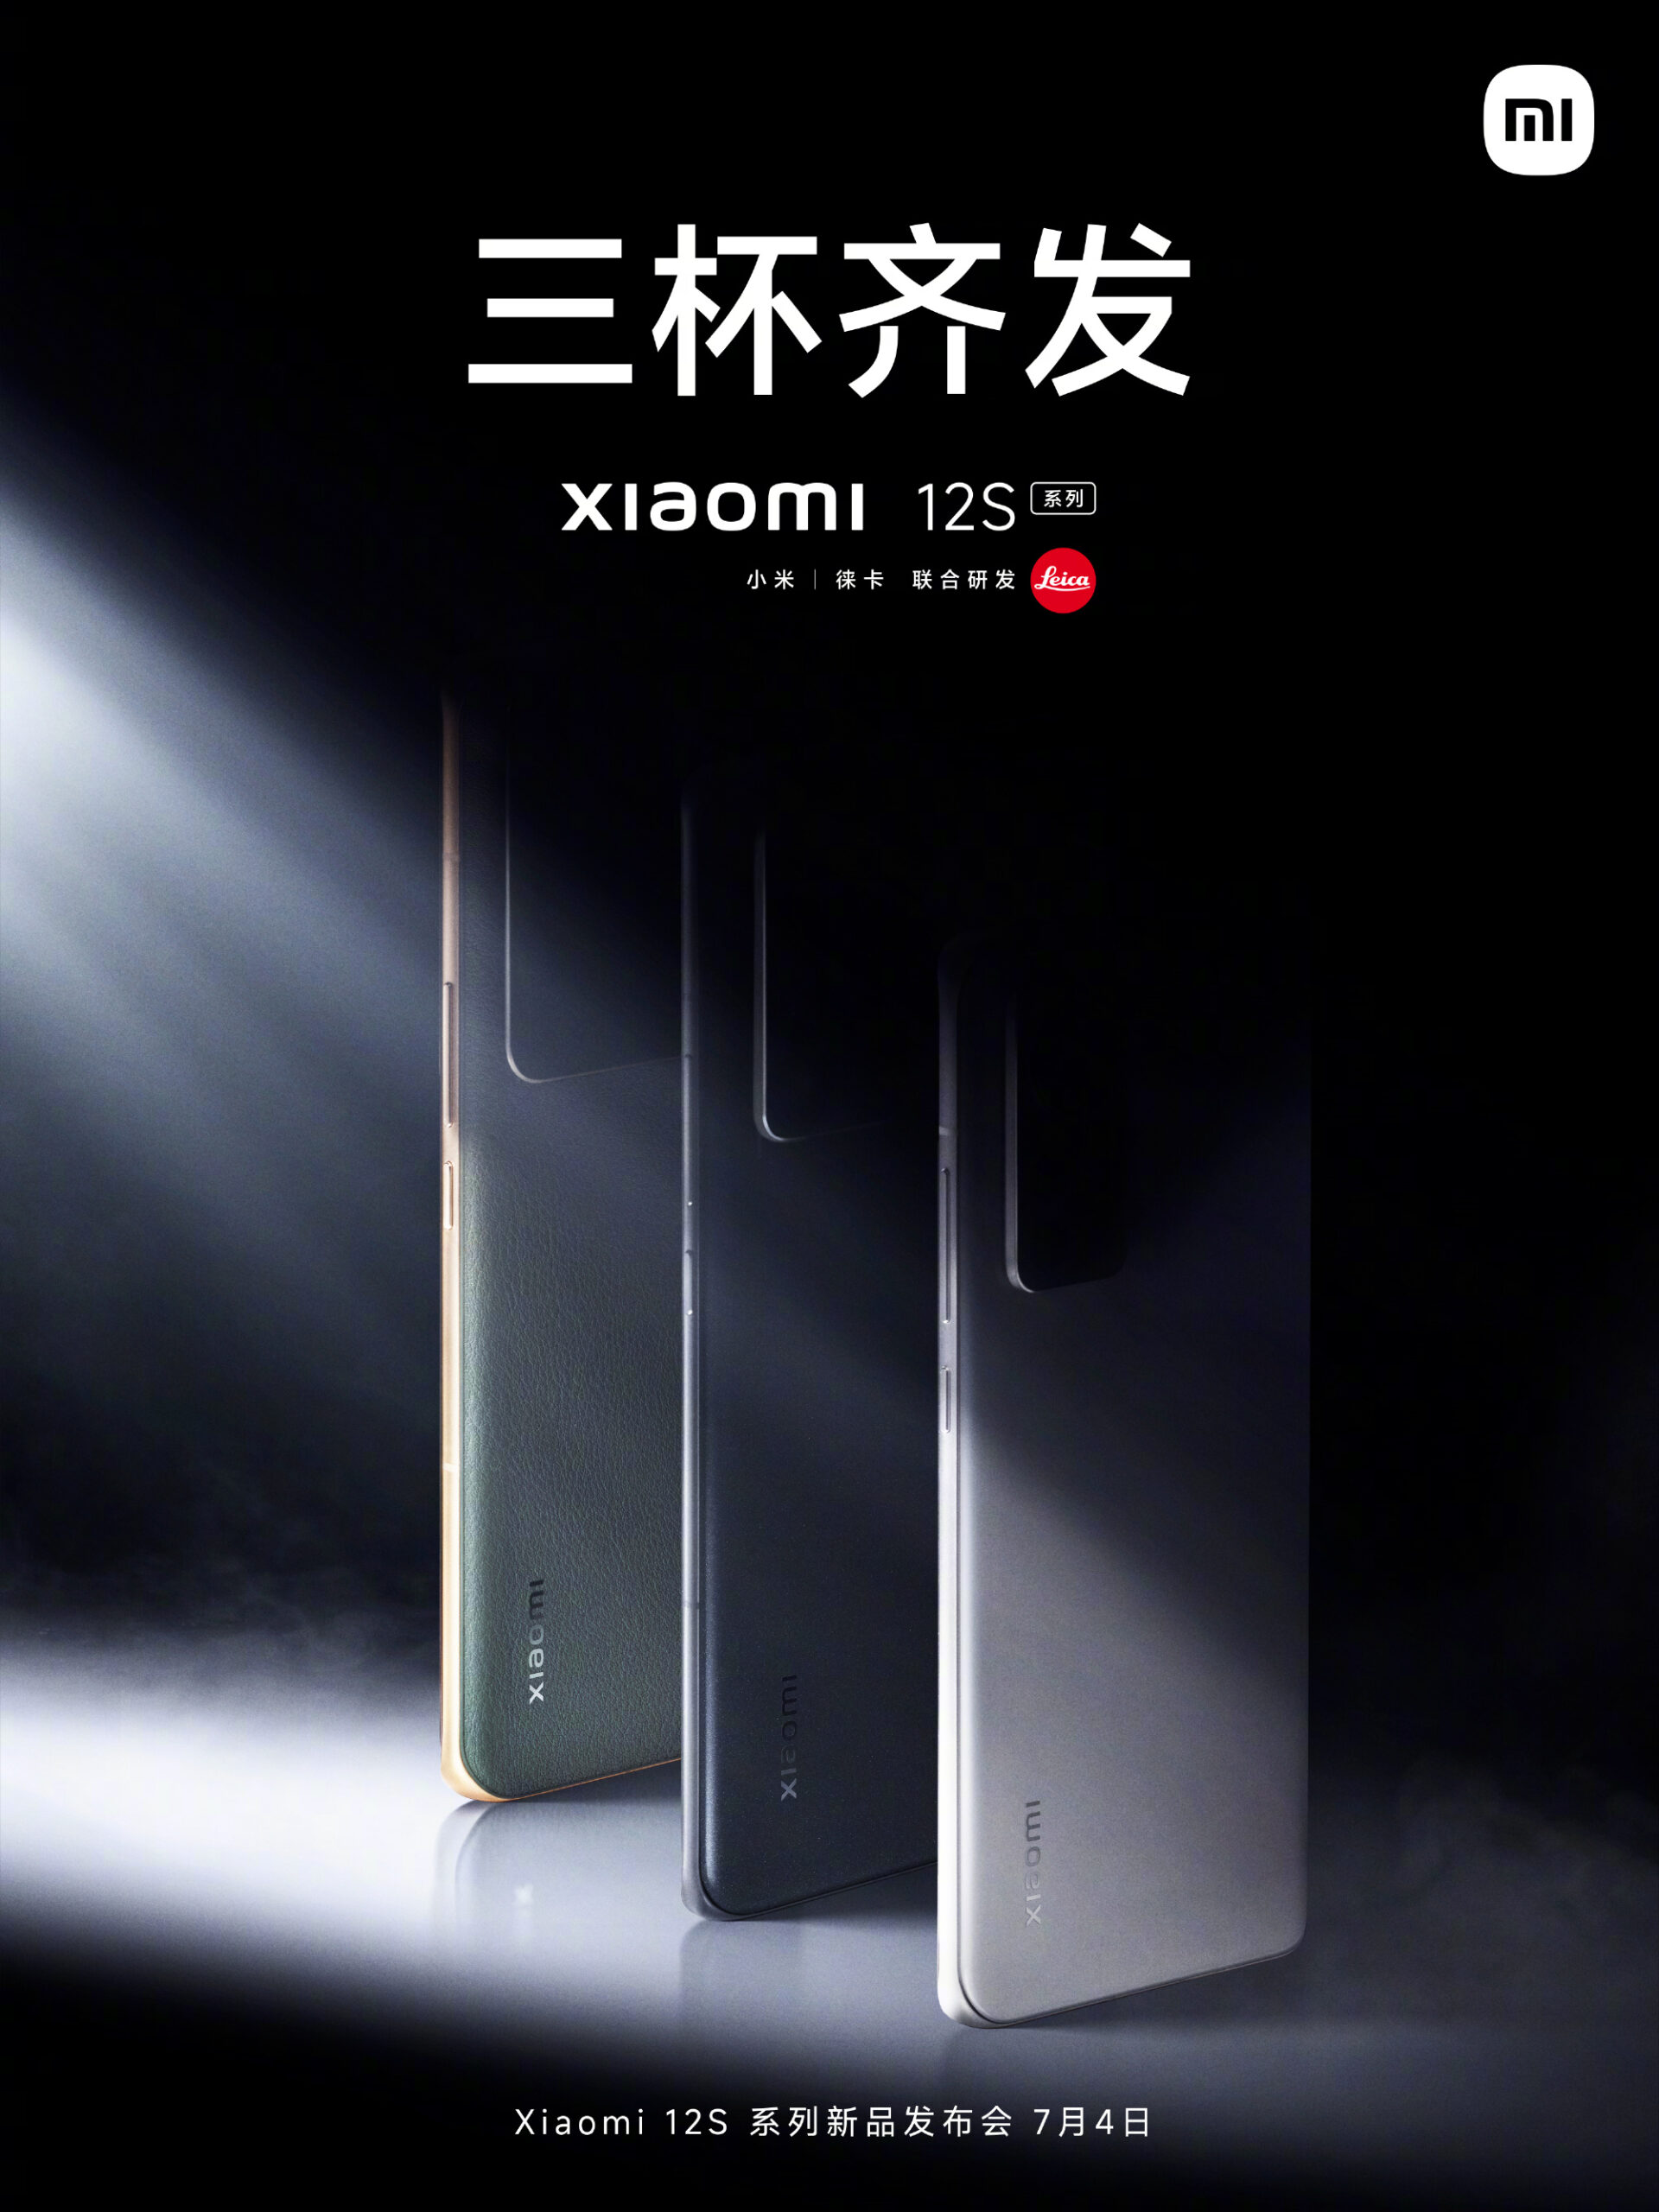 تاريخ إطلاق Xiaomi 12S